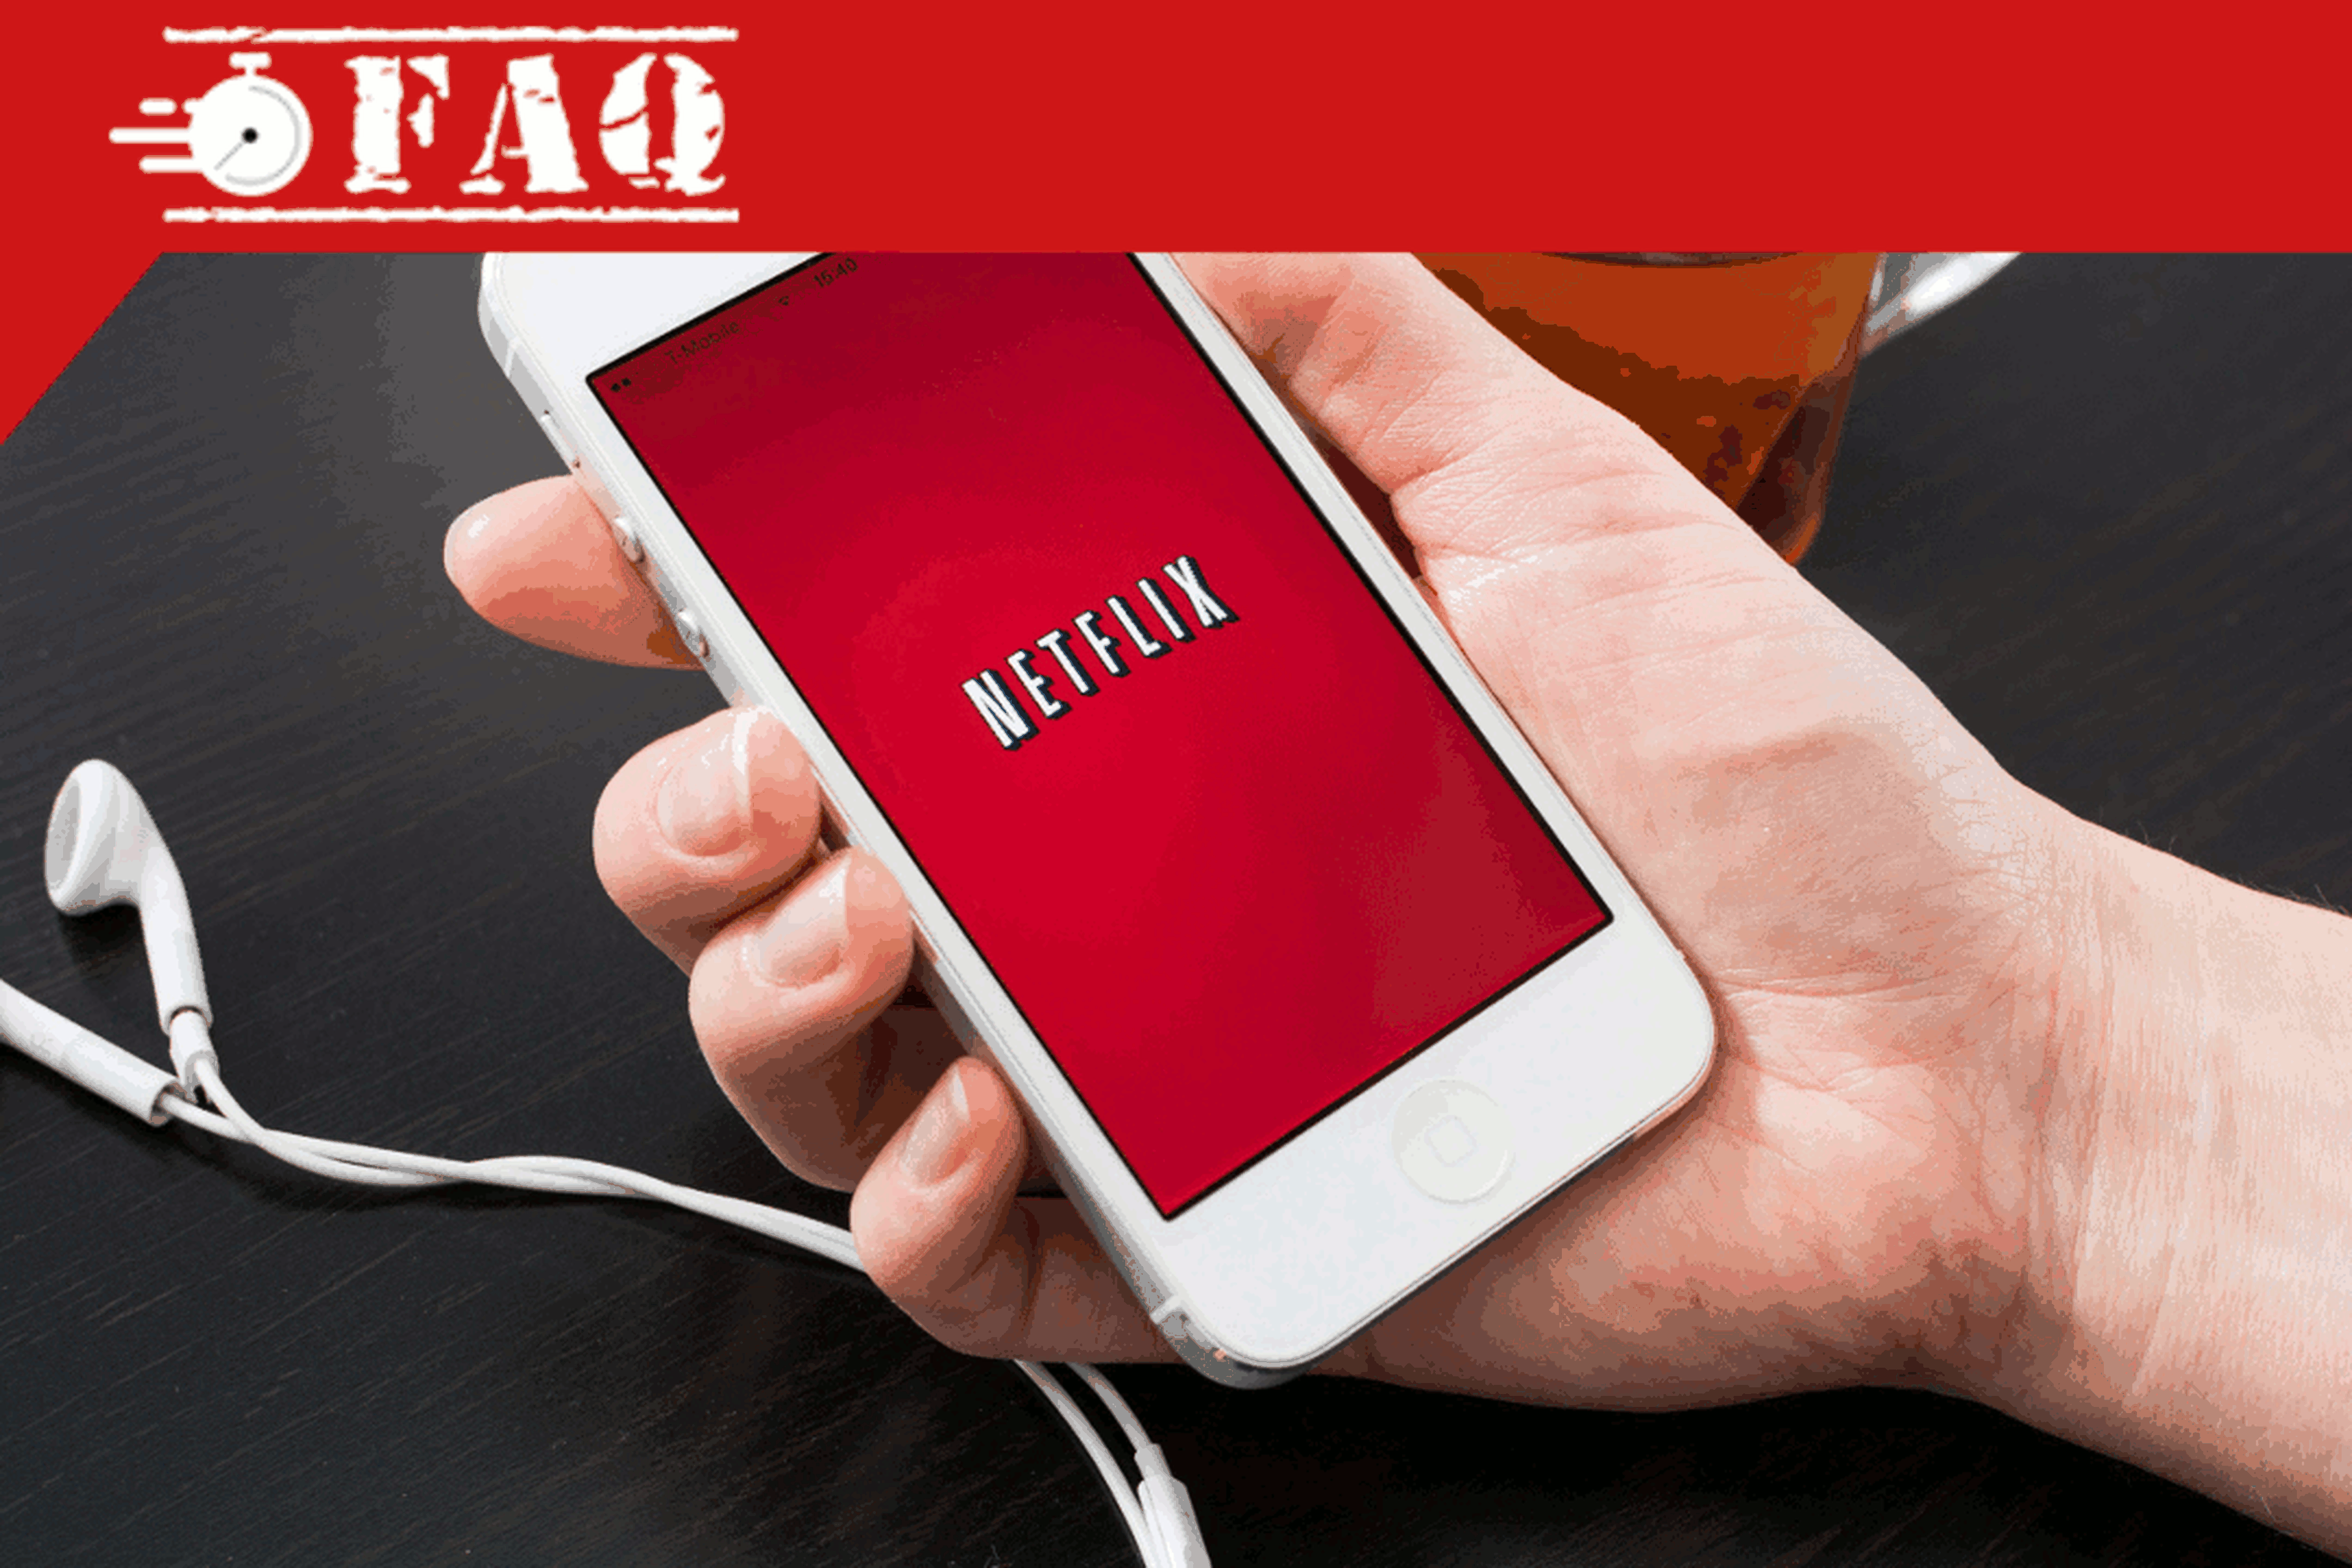 FAQ Netflix